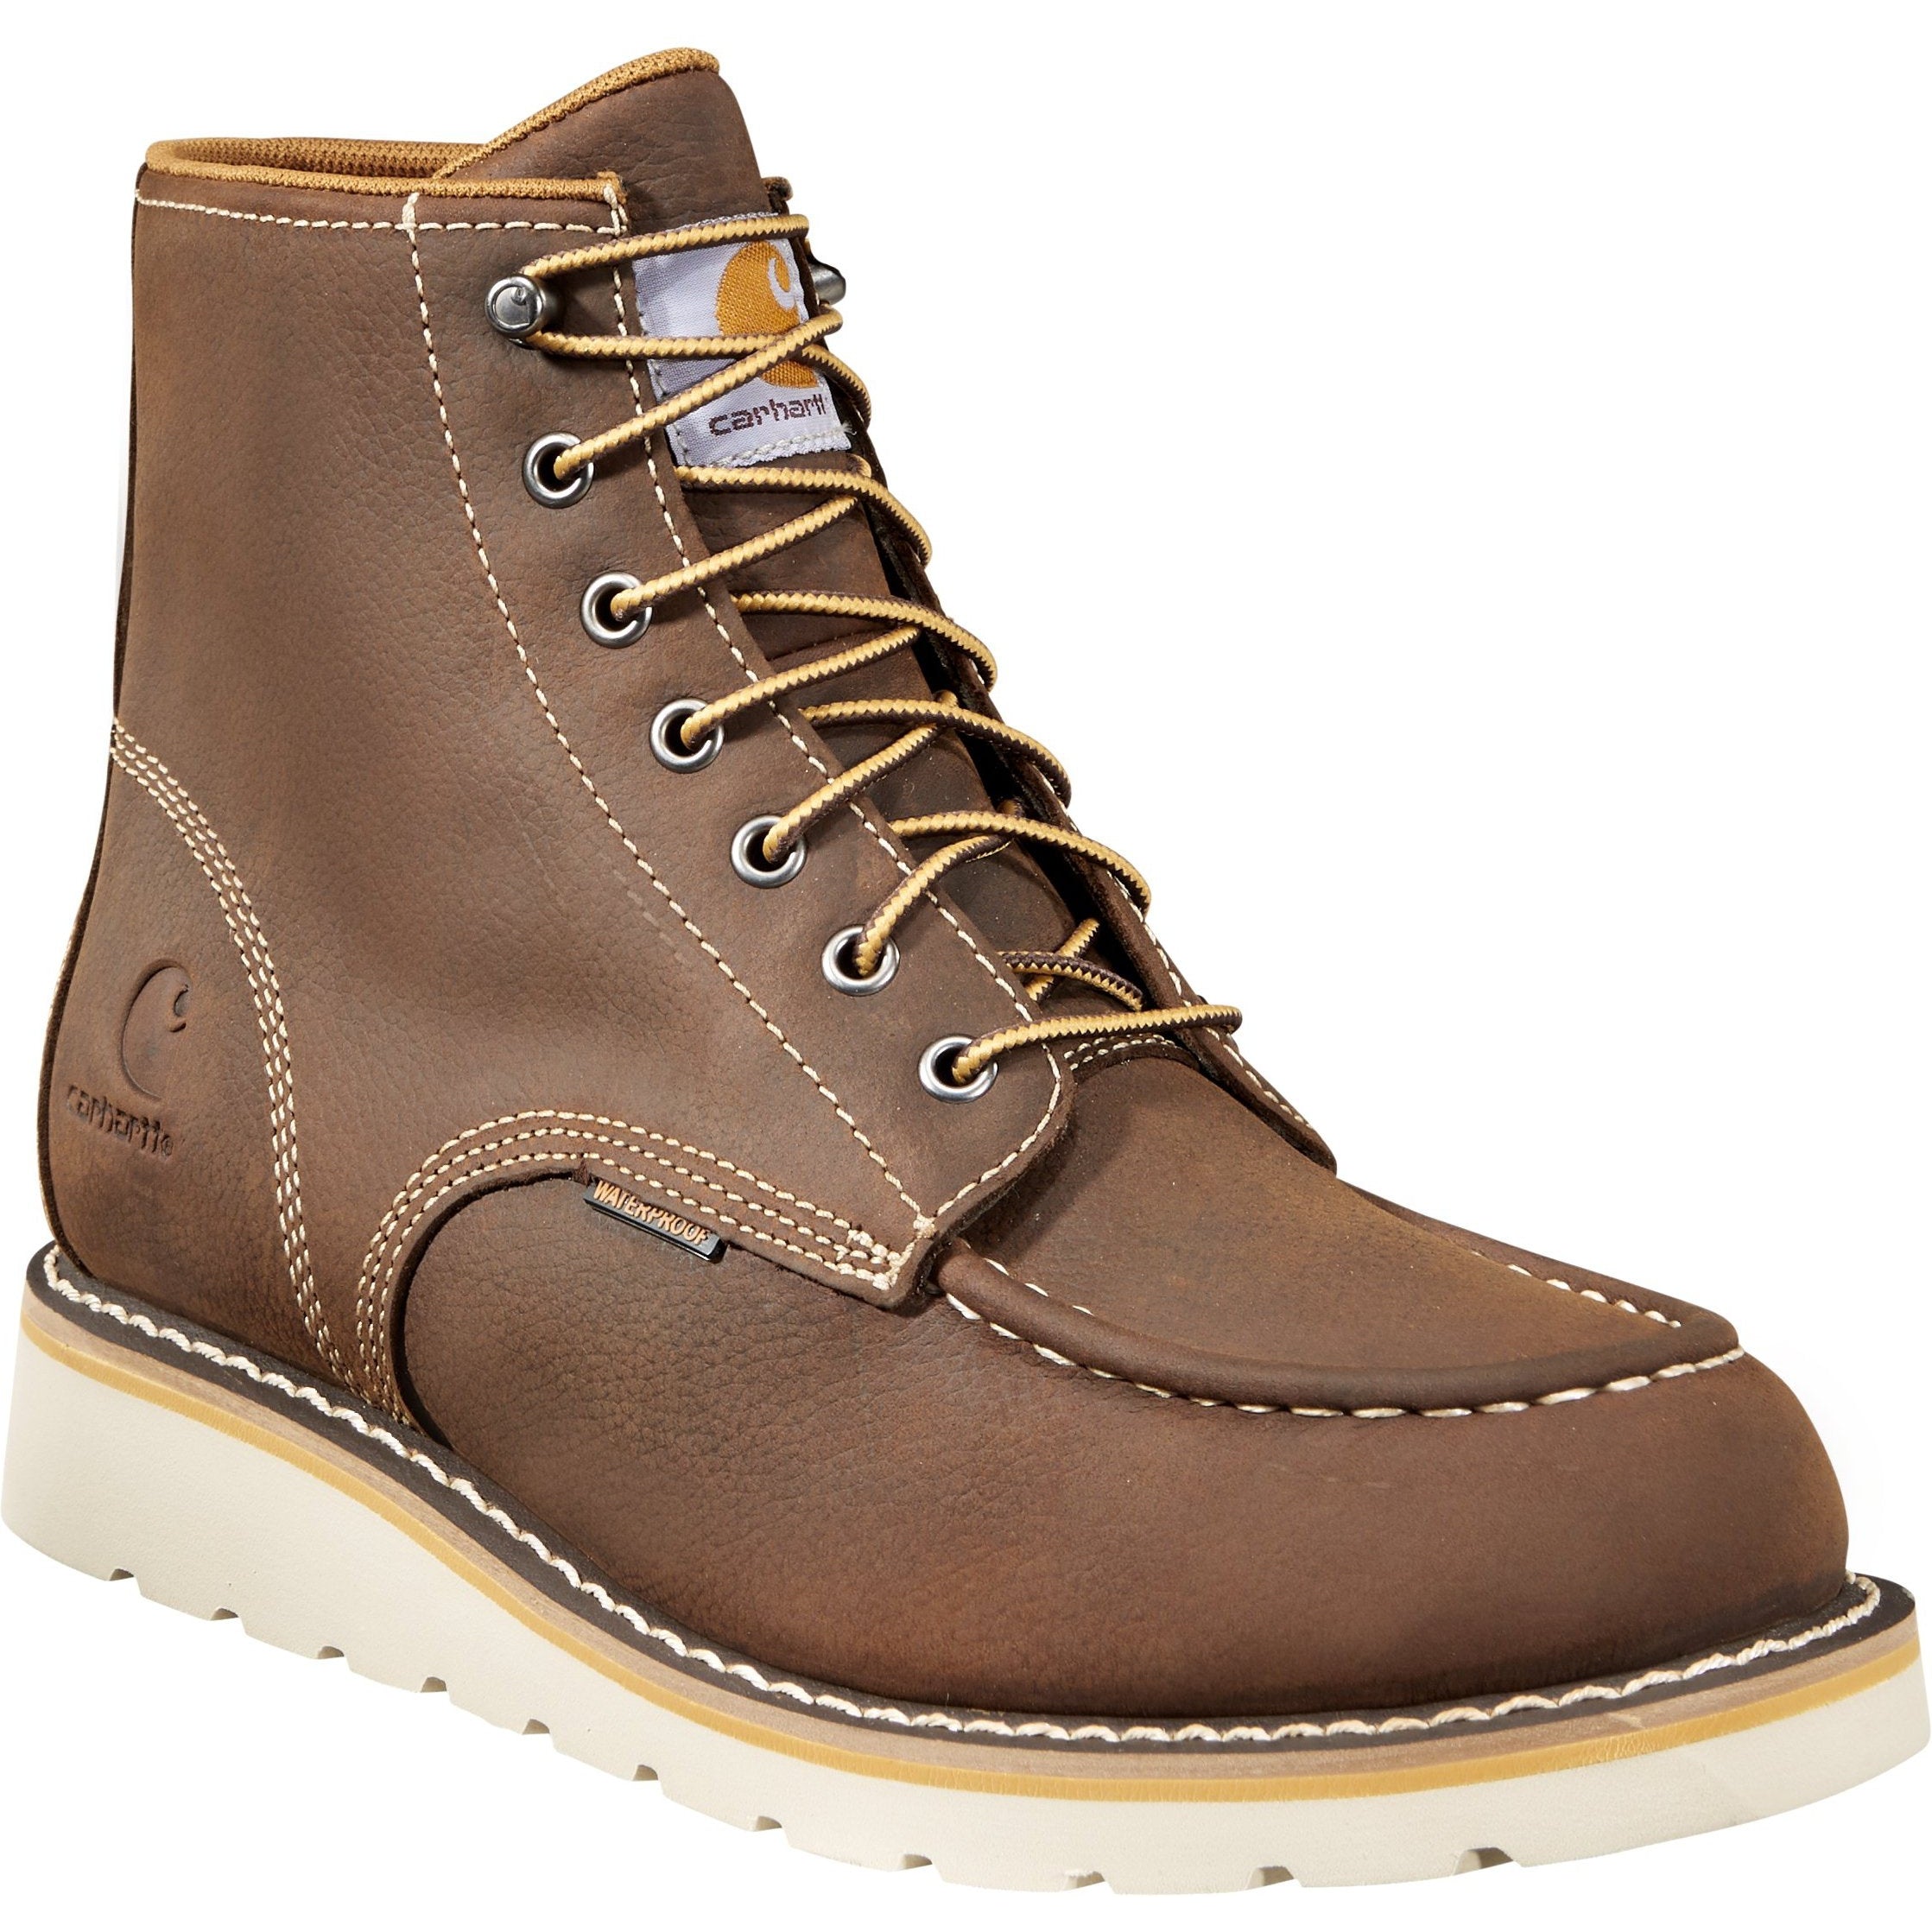 Carhartt Men's 6" Soft Toe Waterproof Wedge Work Boot Brown - CMW6095 8 / Medium / Brown - Overlook Boots